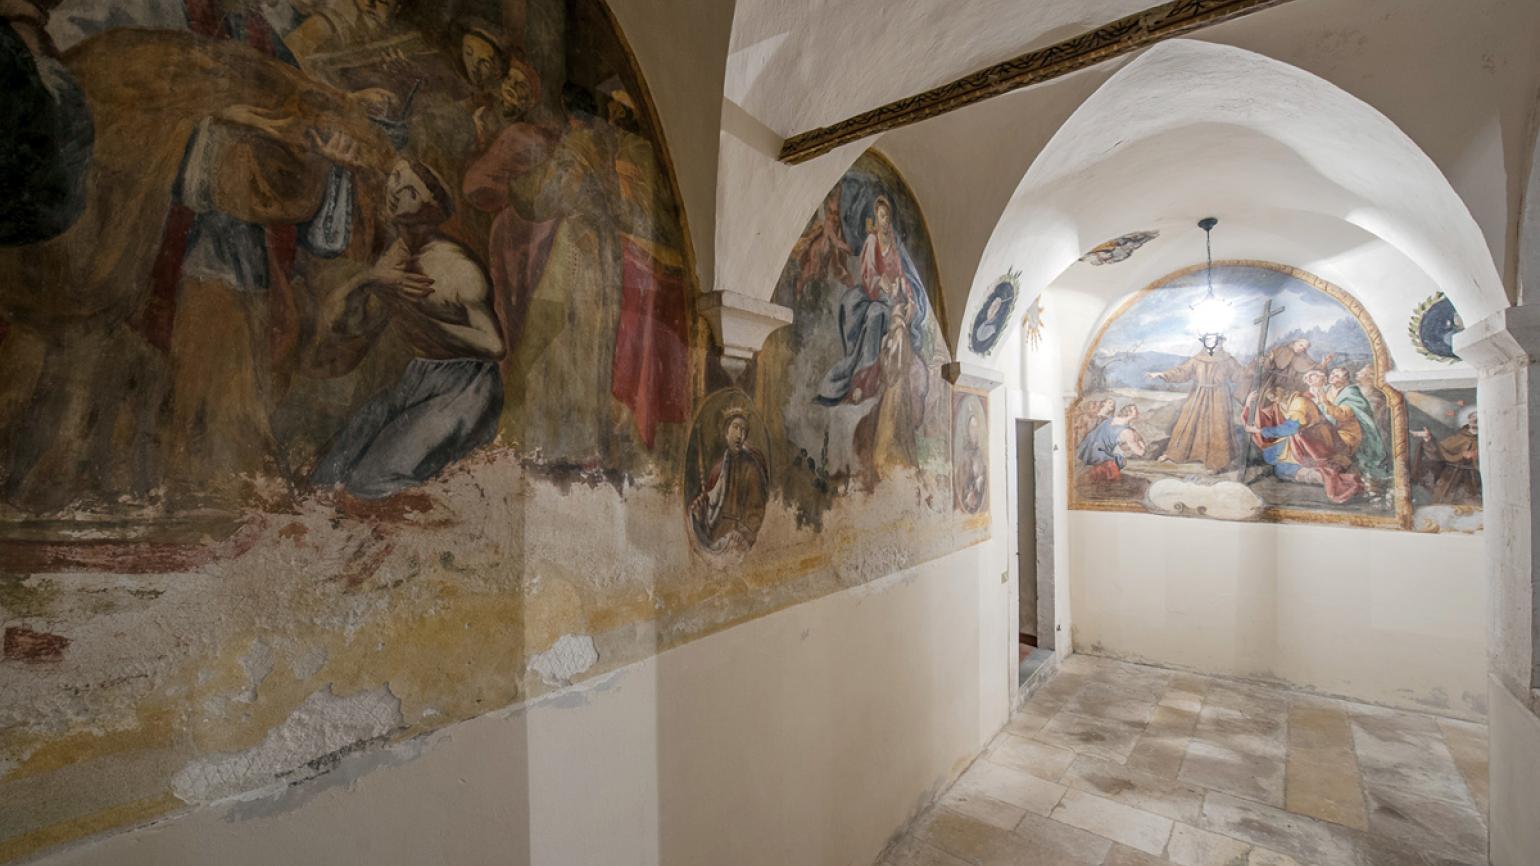 Capestrano (Aq), Il convento di San Francesco, chiostro